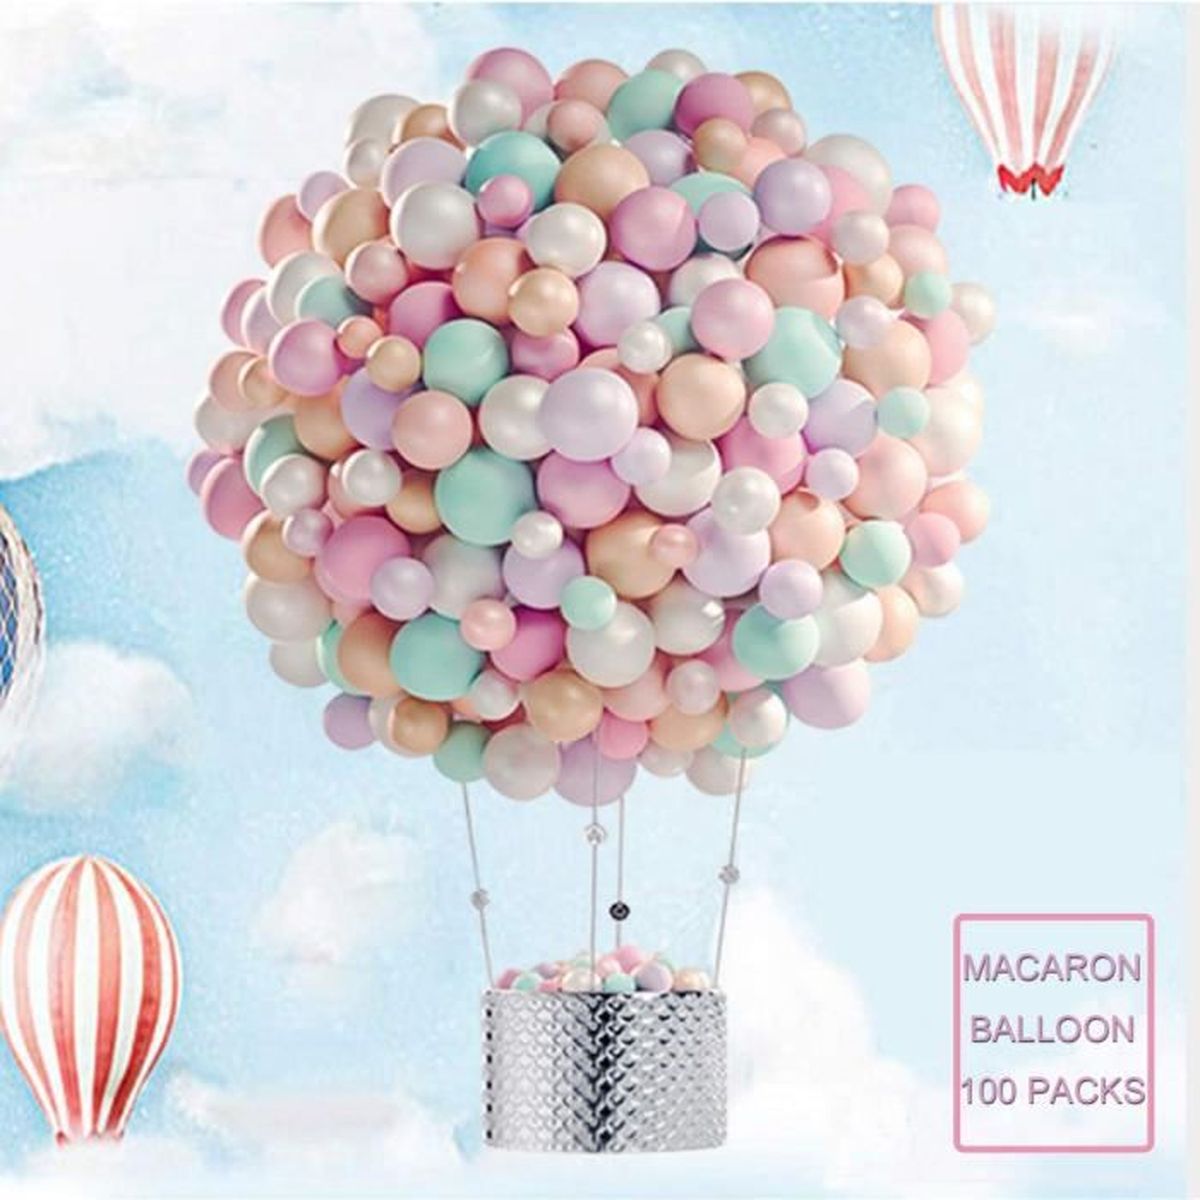 Ballon Macaron Pastel En Latex Pour Decoration De Mariage Bebe Fete D Anniversaire Decor De Saint Valentin Ceremonie 100pcs Prix Pas Cher Cdiscount